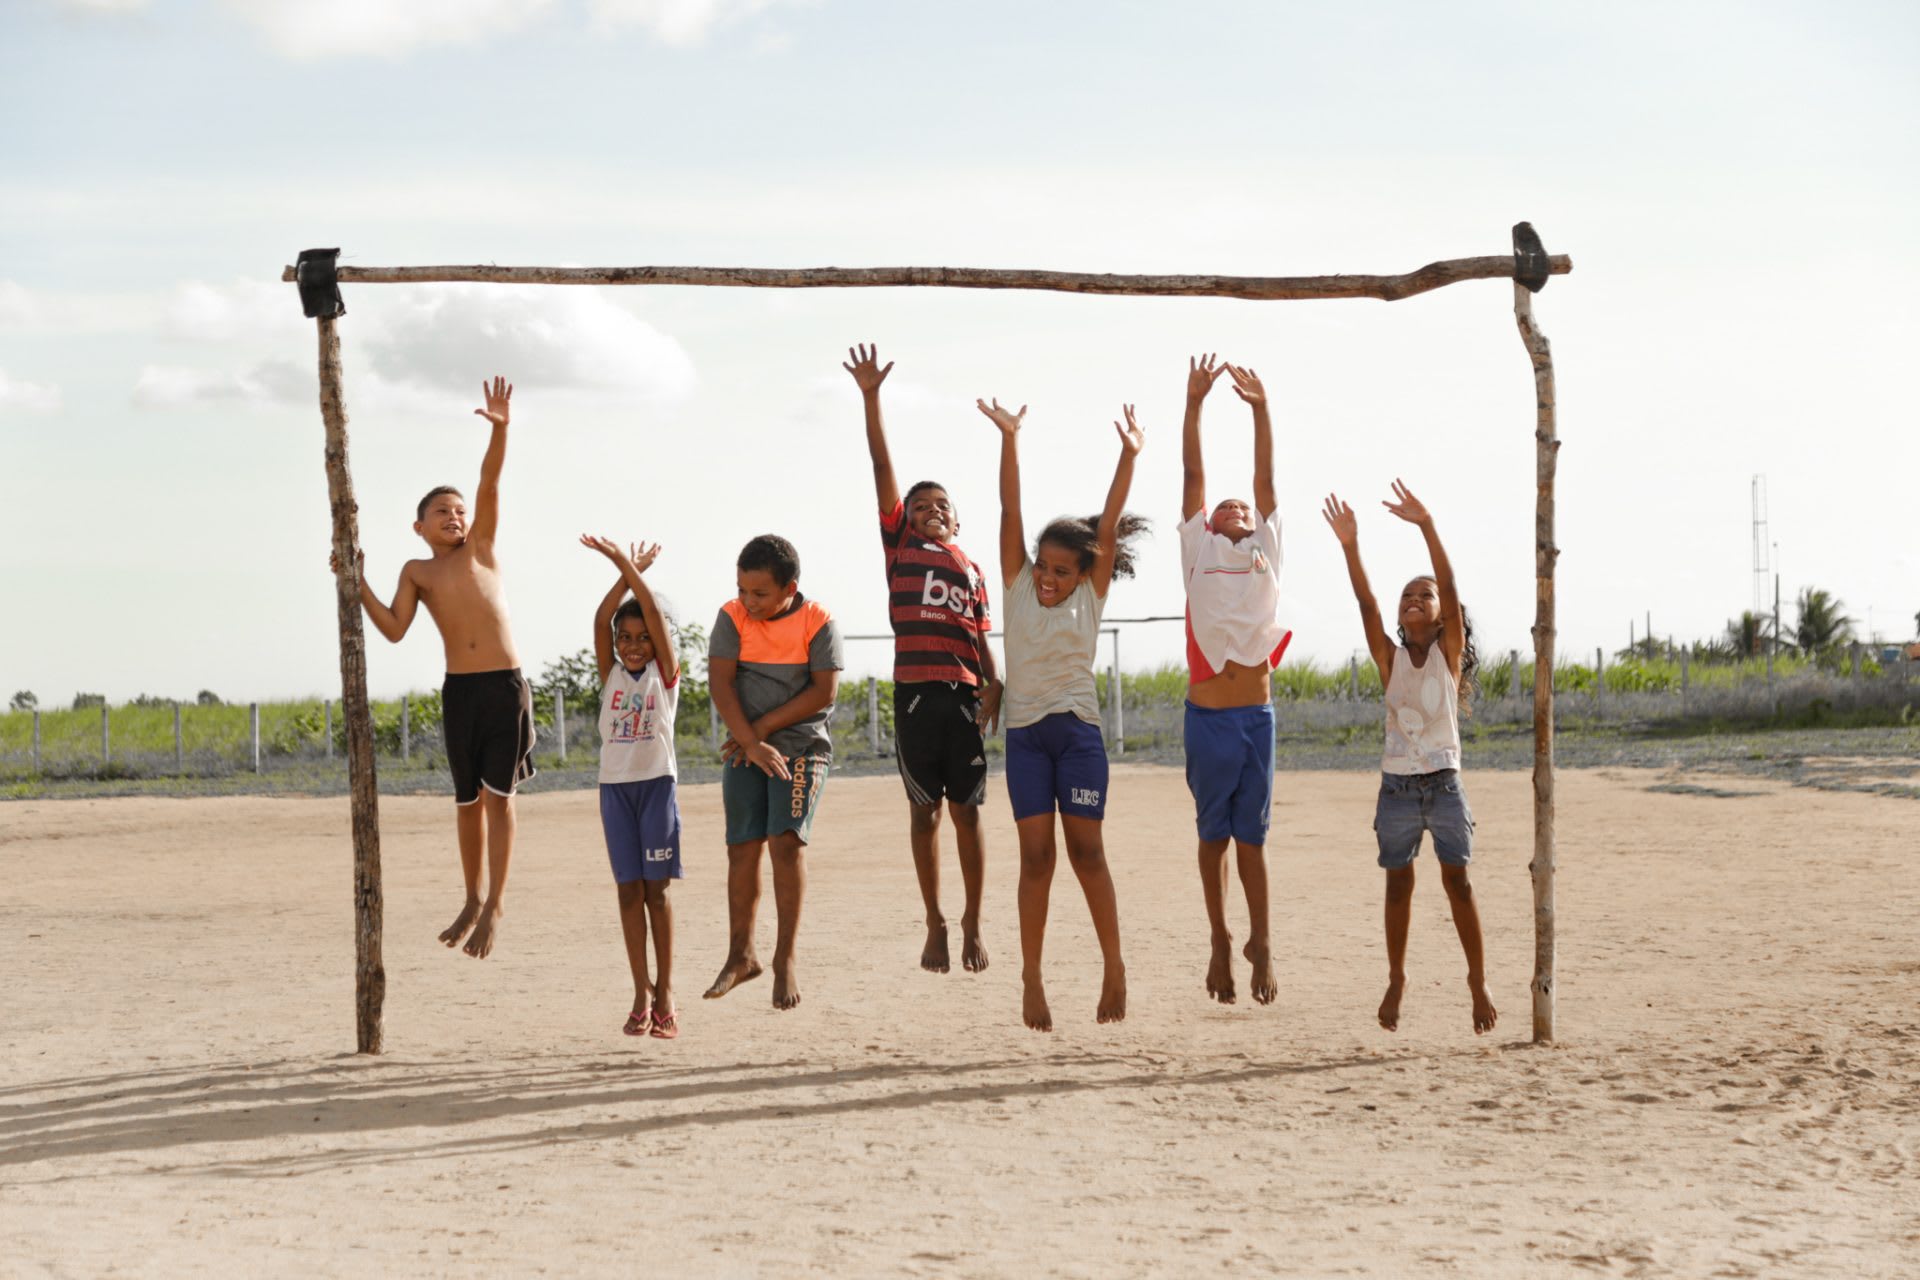 seven children jump up to reach a stick bar